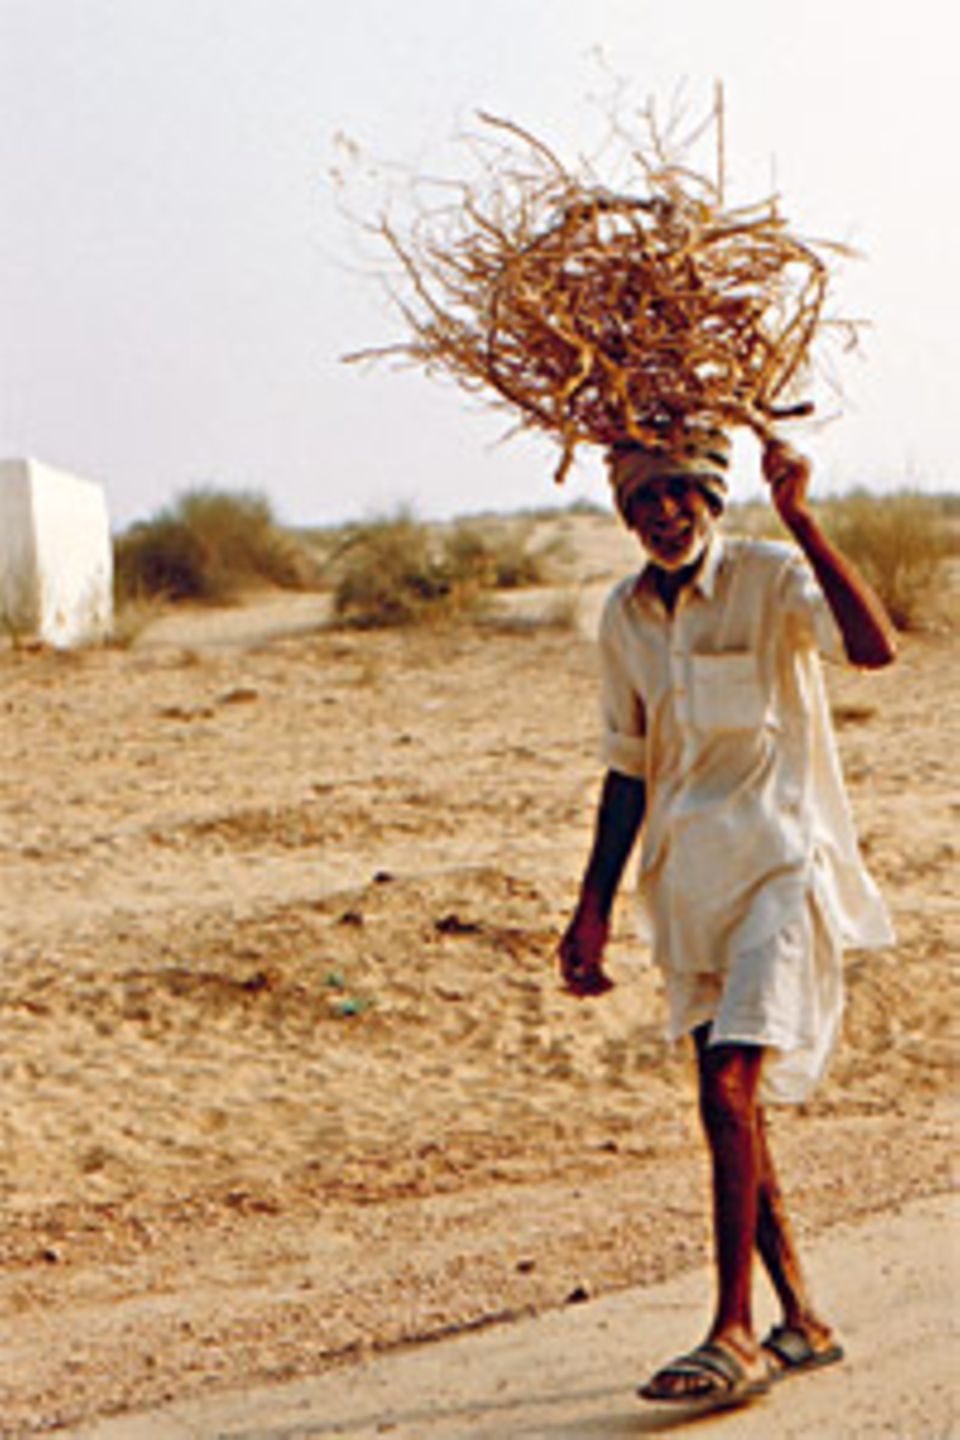 Alltag in Indien: Reisig sammeln für den Ofen wie hier in der Wüste Thar